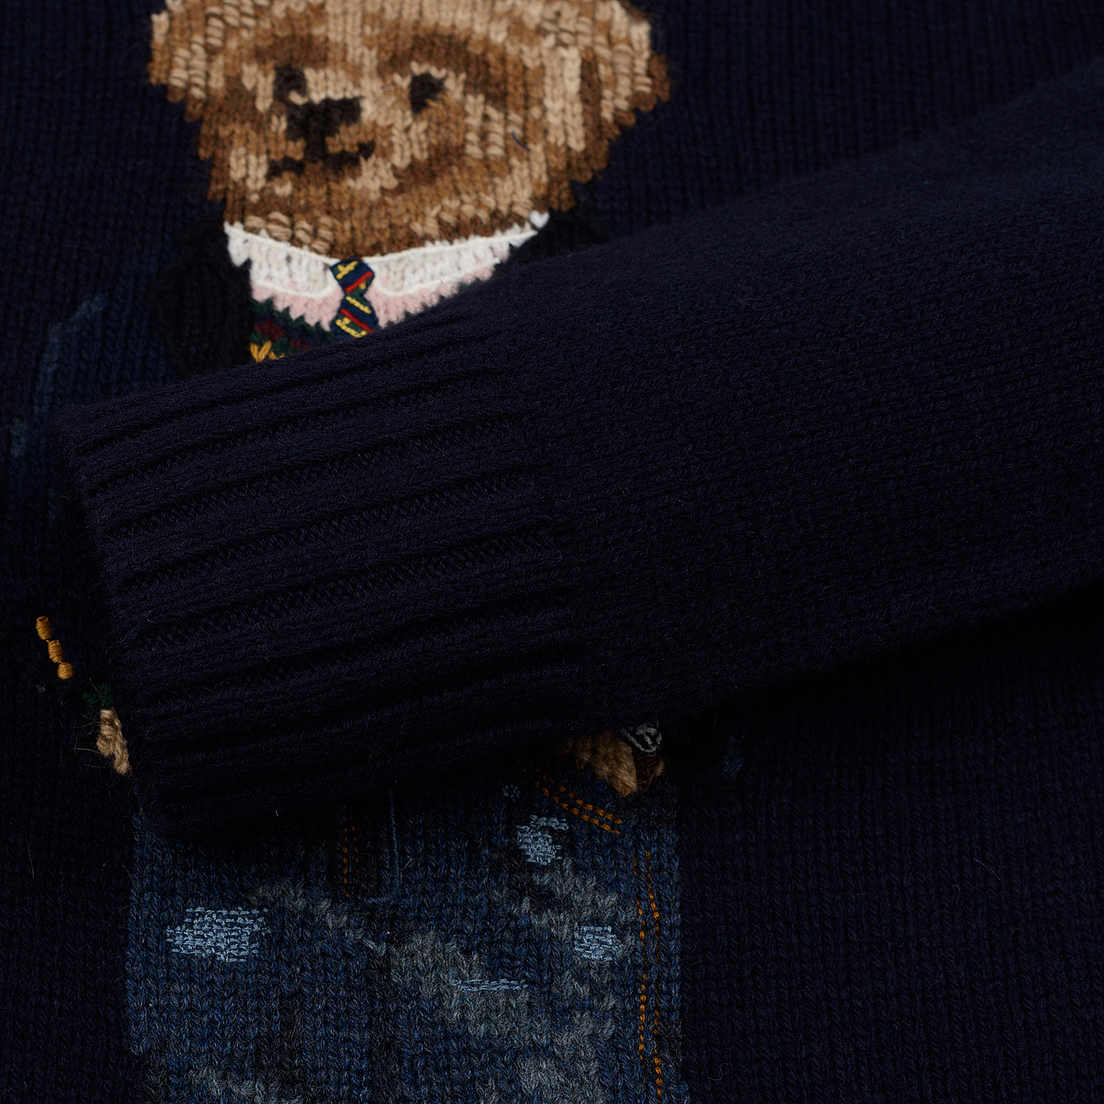 Polo Ralph Lauren Женский свитер Preppy Bear Wool Blend